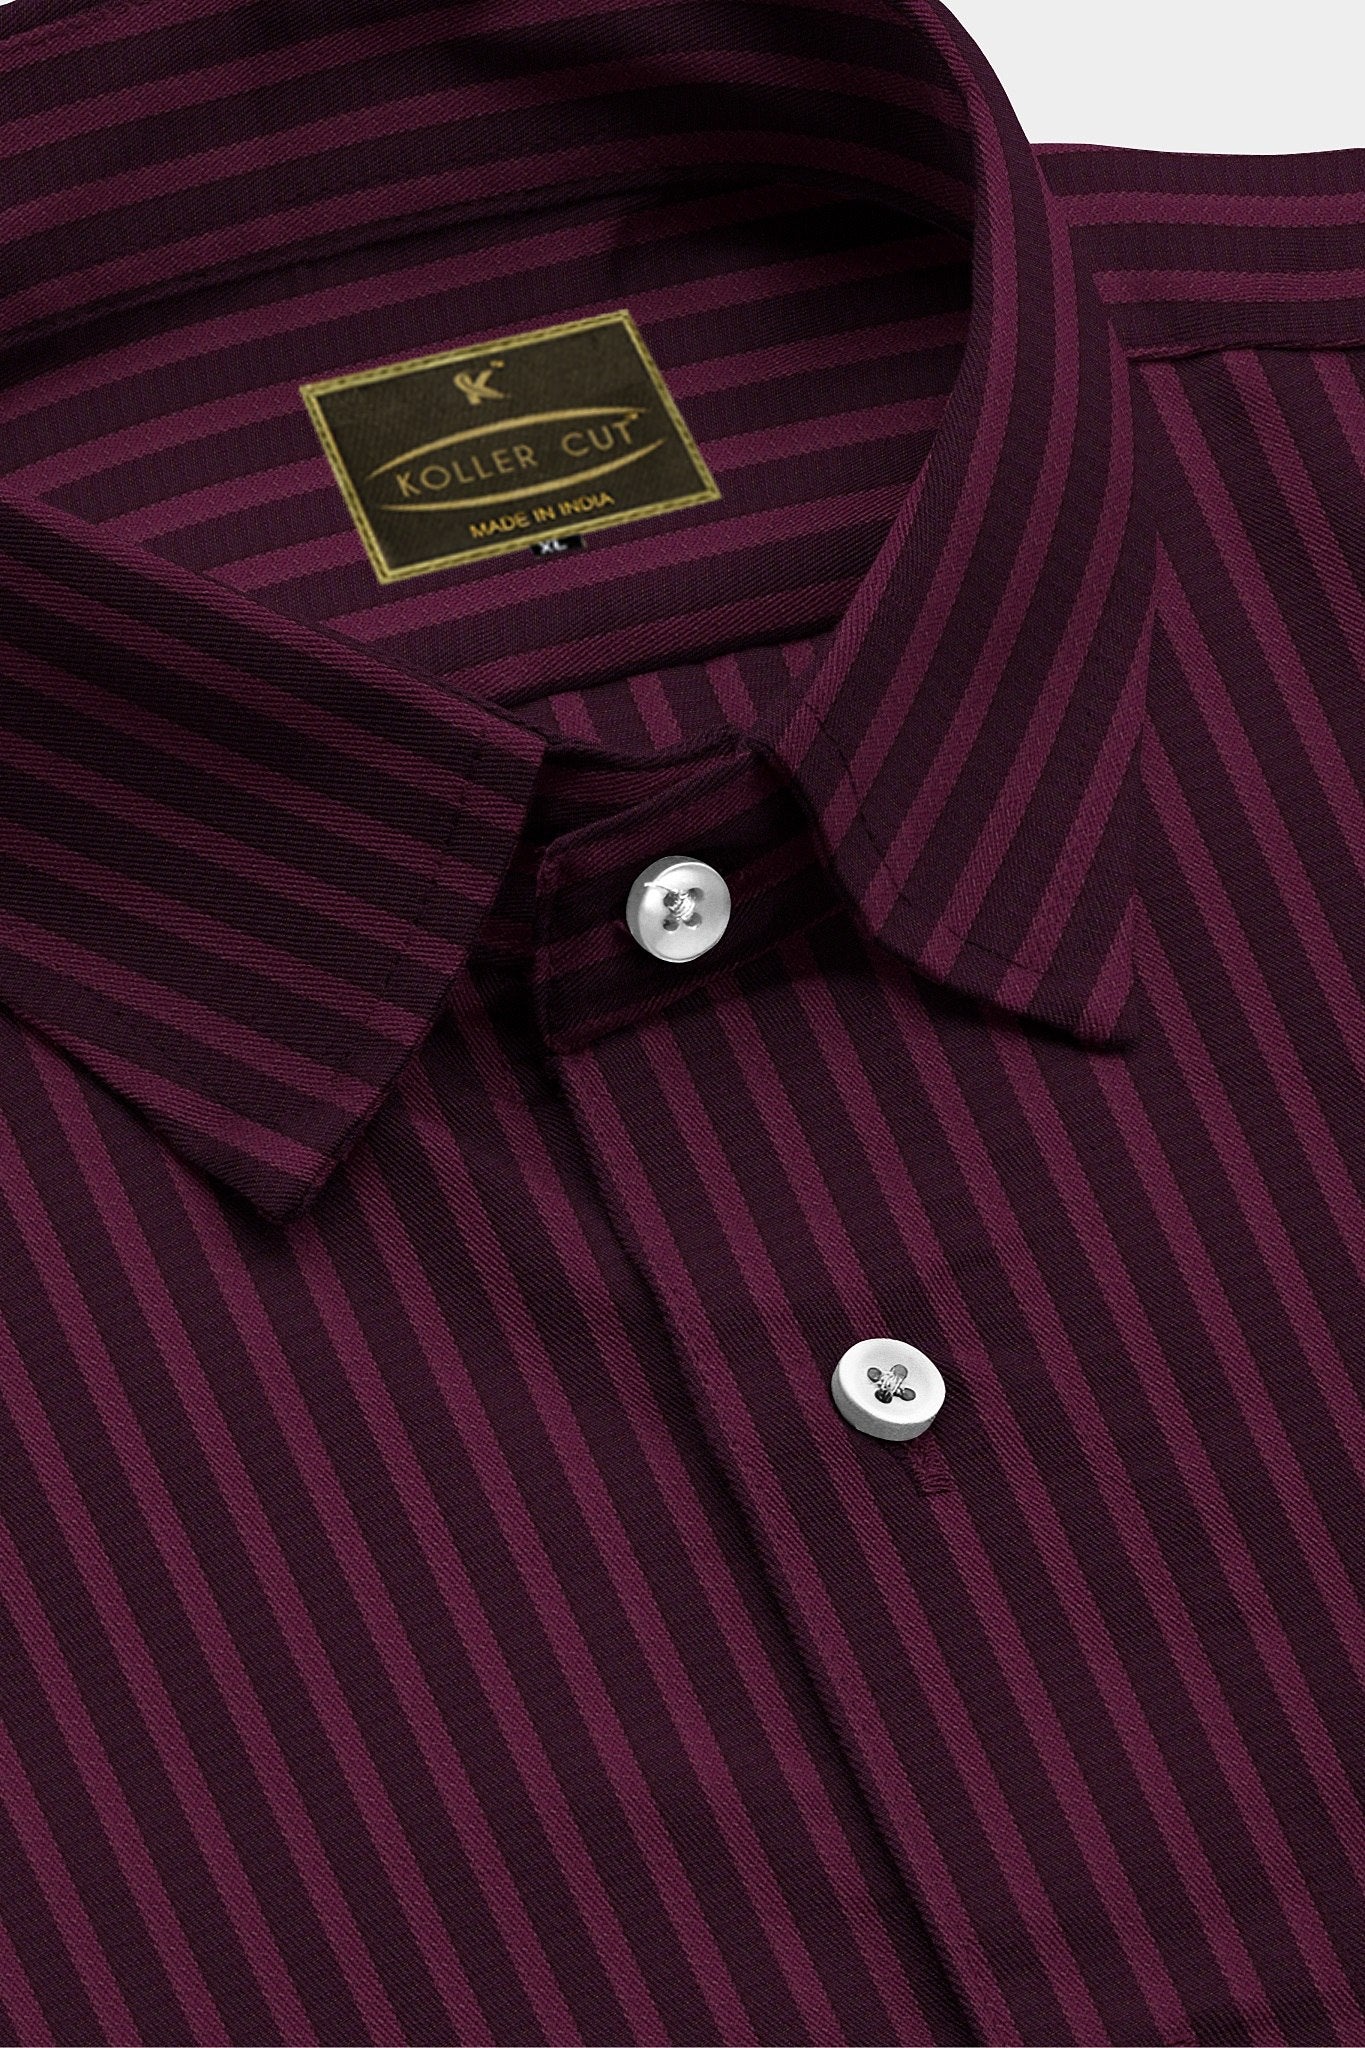 Sangria Purple with Plum Purple Candy Stripes Men's Premium Cotton Shirt